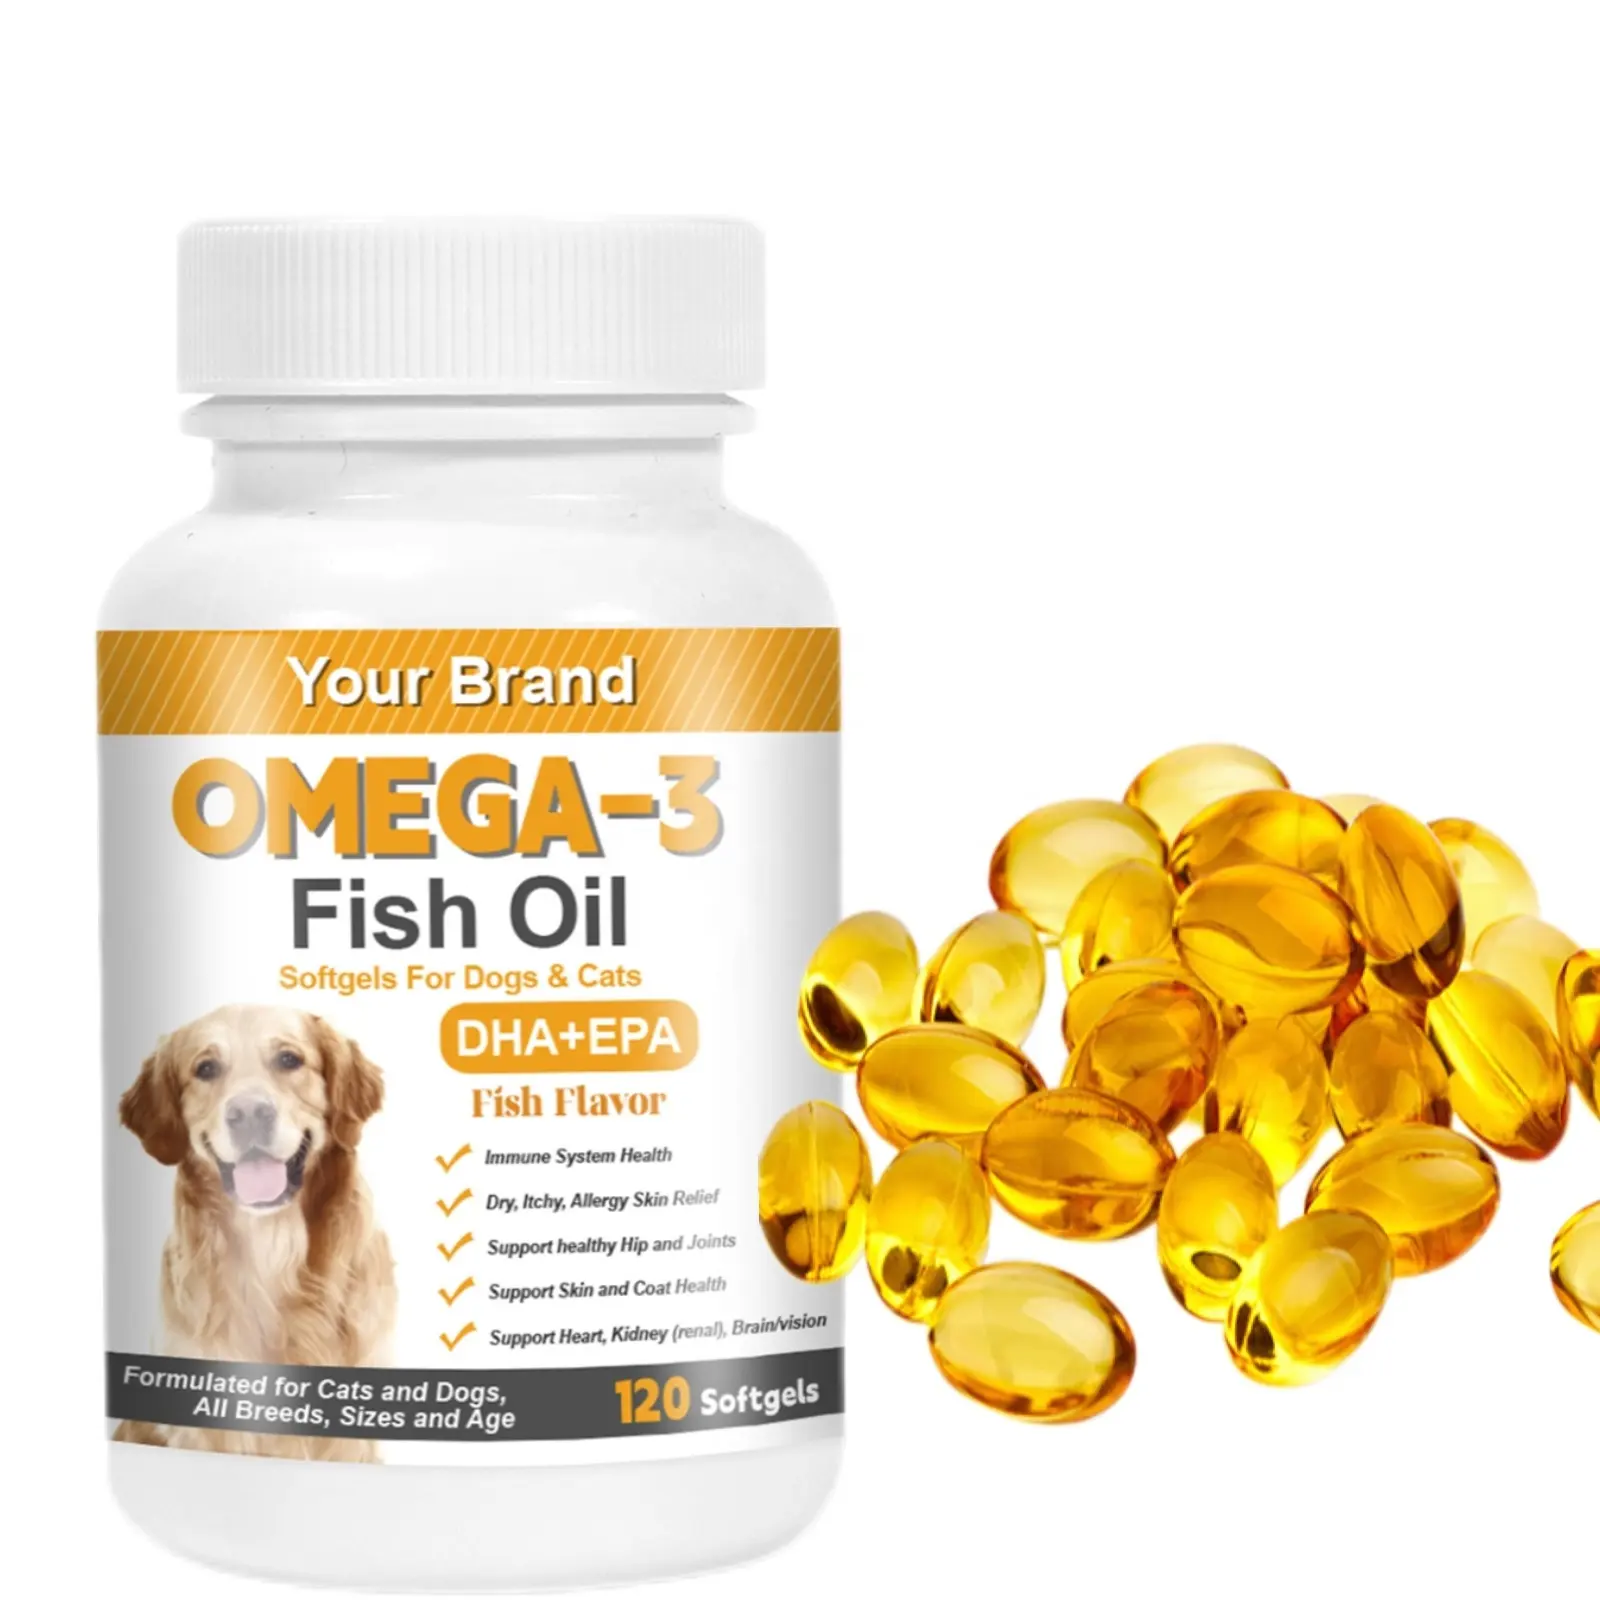 OEM पेट सॉफ़्टजेल कुत्तों और बिल्लियों के लिए डीएचए+ईपीए मछली के तेल के साथ ओमेगा-3 की खुराक प्रतिरक्षा प्रणाली का समर्थन करता है